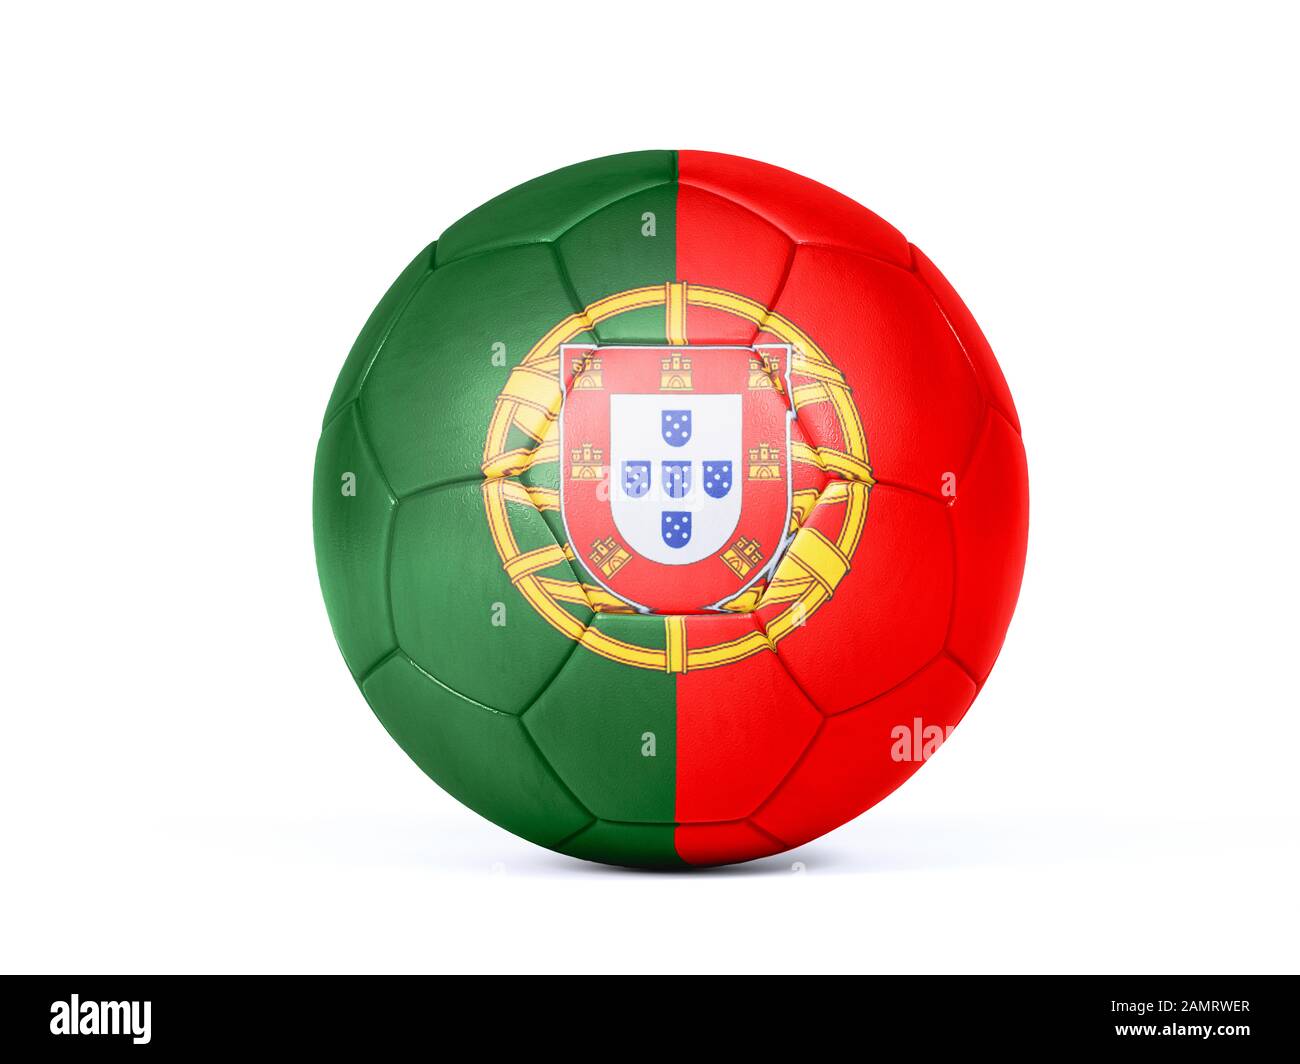 Pallone da calcio o calcio con i colori della bandiera nazionale portoghese concettuale del supporto di squadra in campionati o la Coppa del mondo isolato su bianco Foto Stock